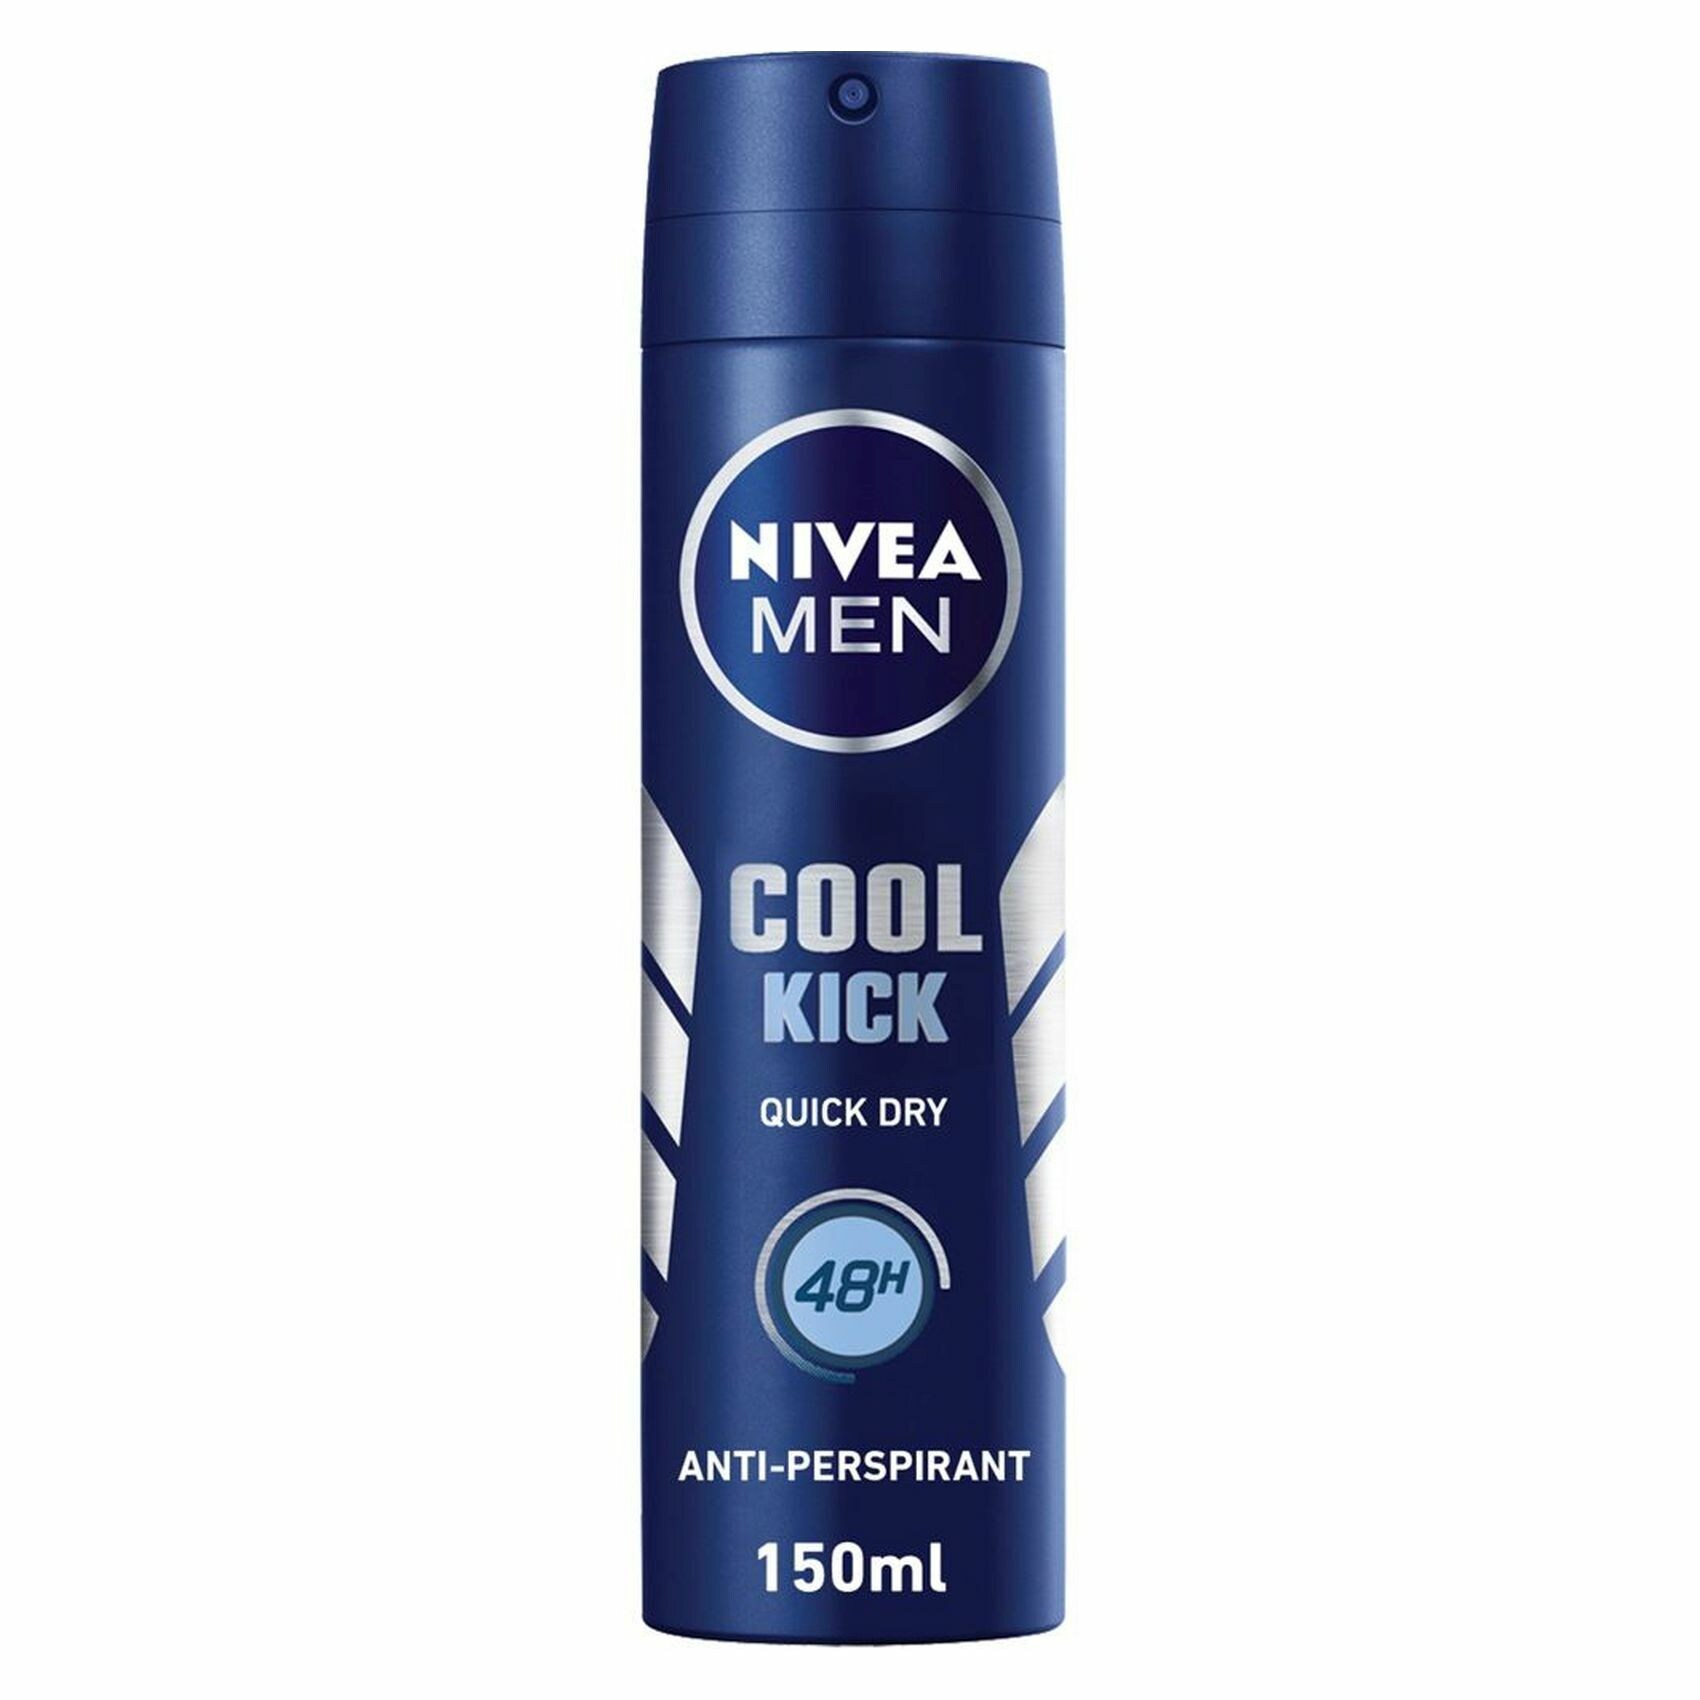 Buy Nivea Men Cool Kick Anti-Perspirant Deodorant 150ml Online - Shop ...